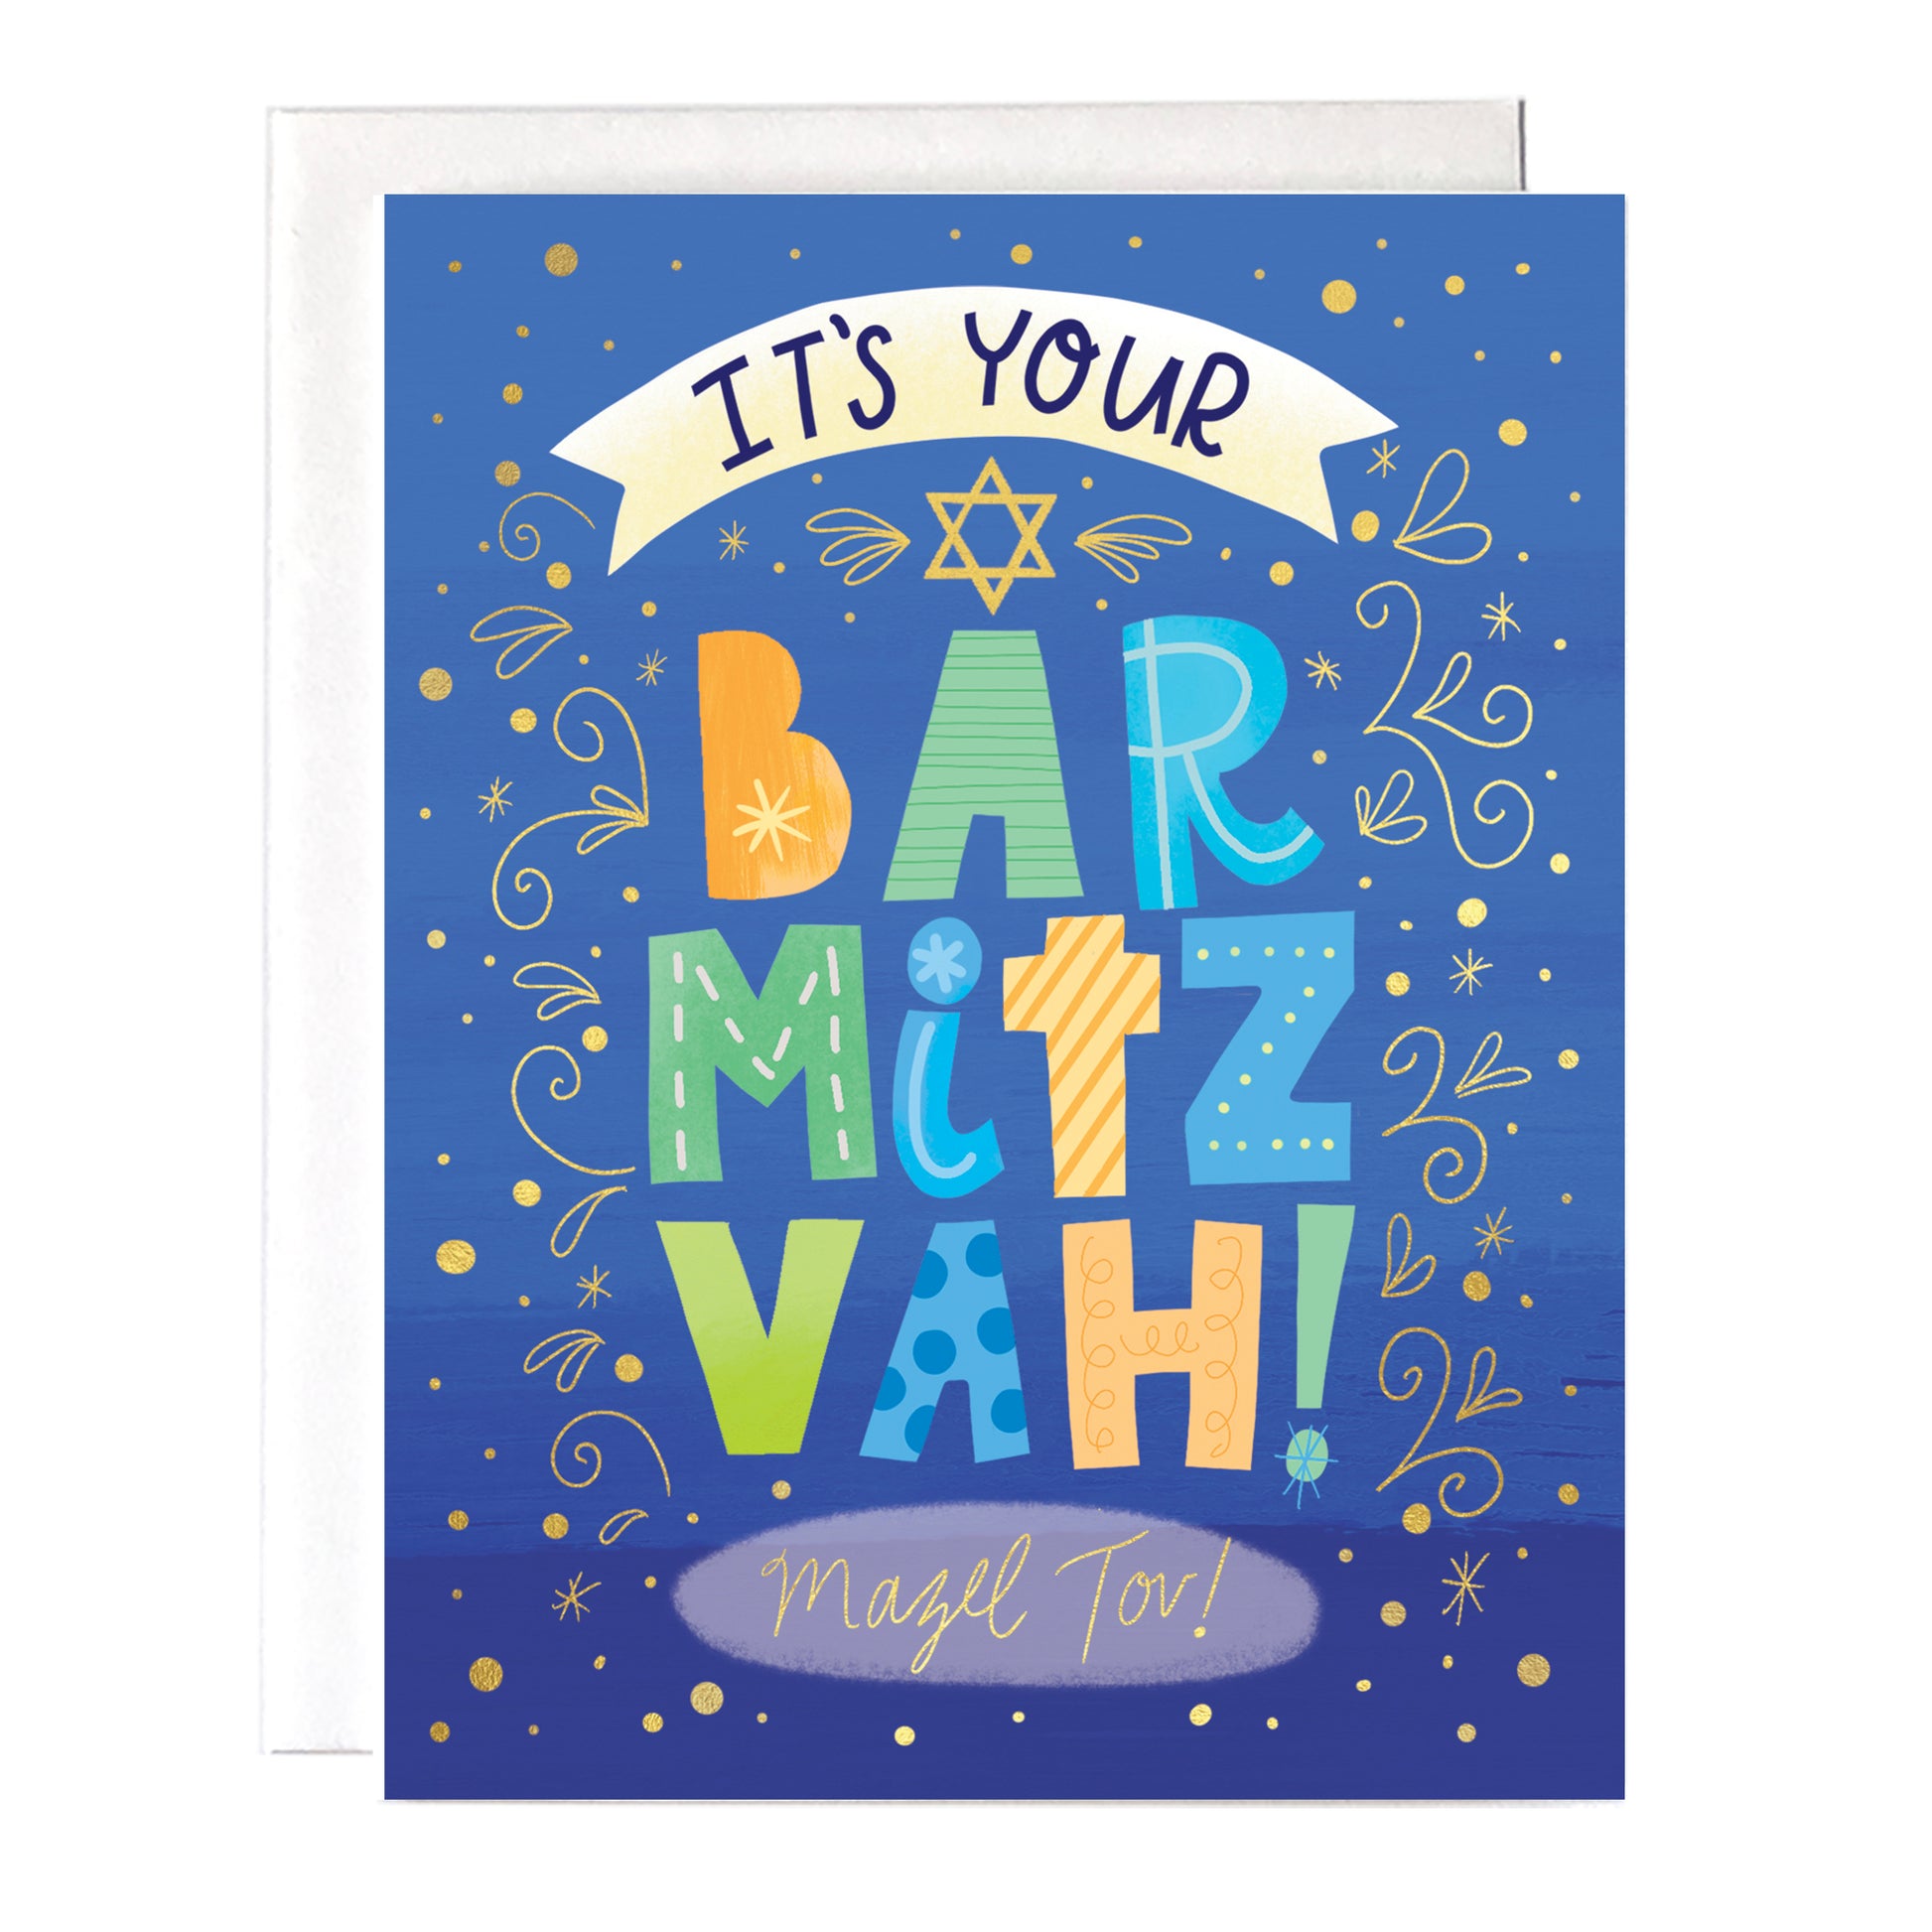 bar mitzvah card